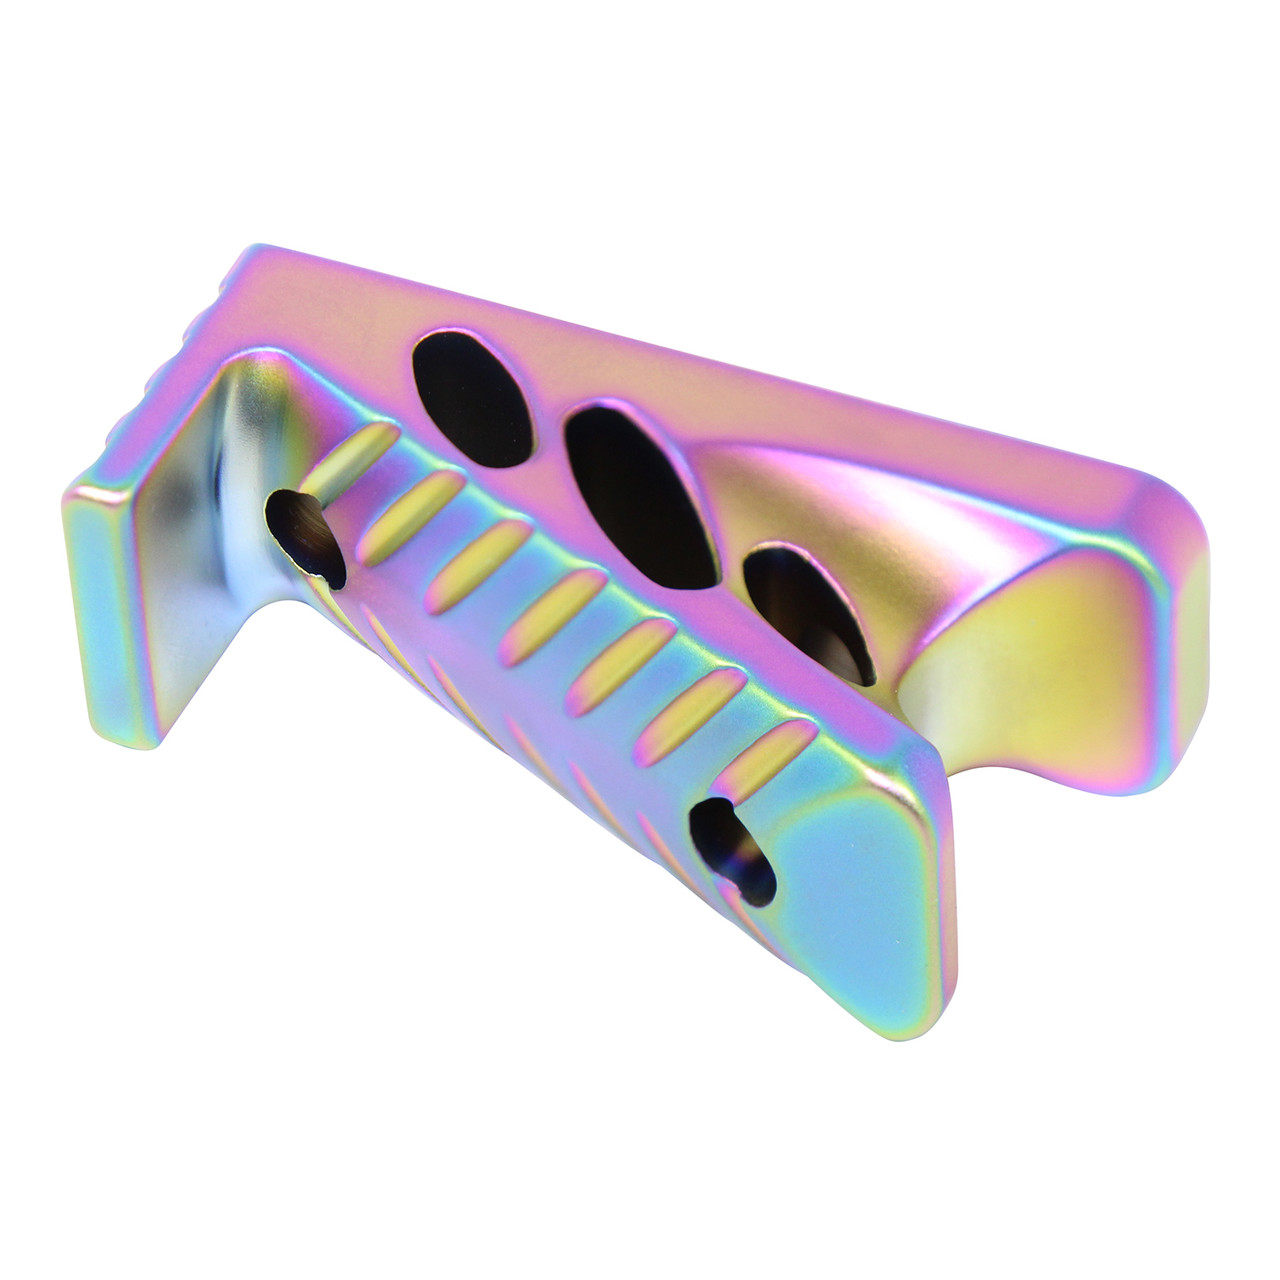 Guntec USA ANGLE-MICRO-M-RPVD M-LOK Micro Angle Grip (Matte Rainbow PVD Coated)